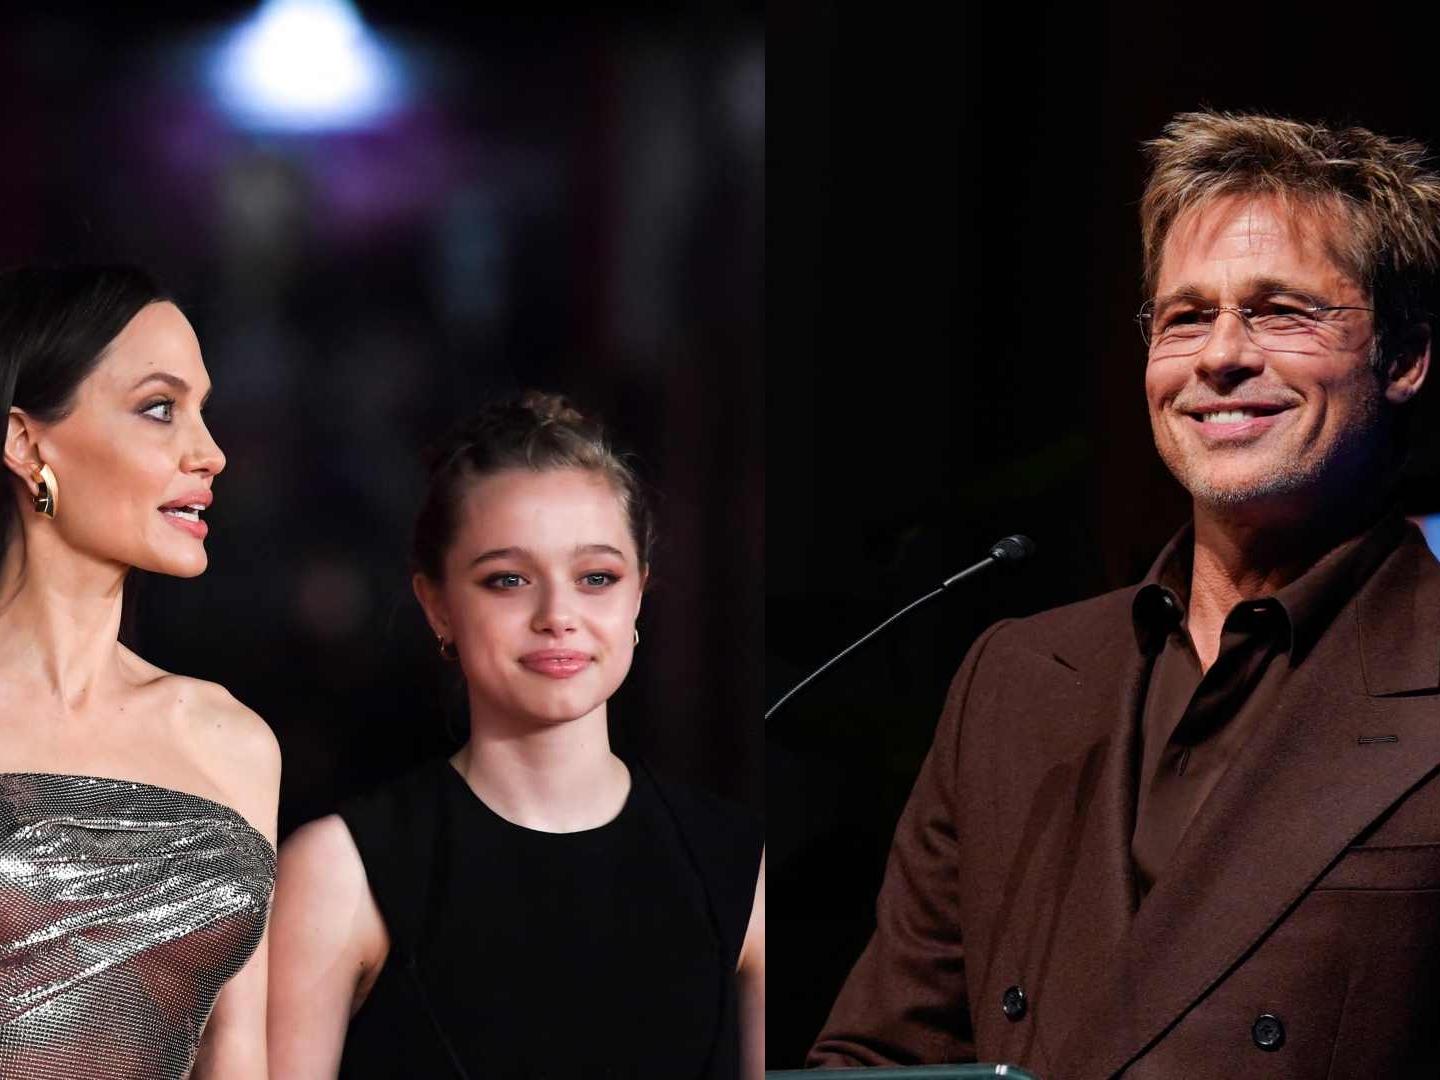 Hija de Brad Pitt ya No Quiere Llevar su Apellido y Pide Suprimirlo por Vía Legal